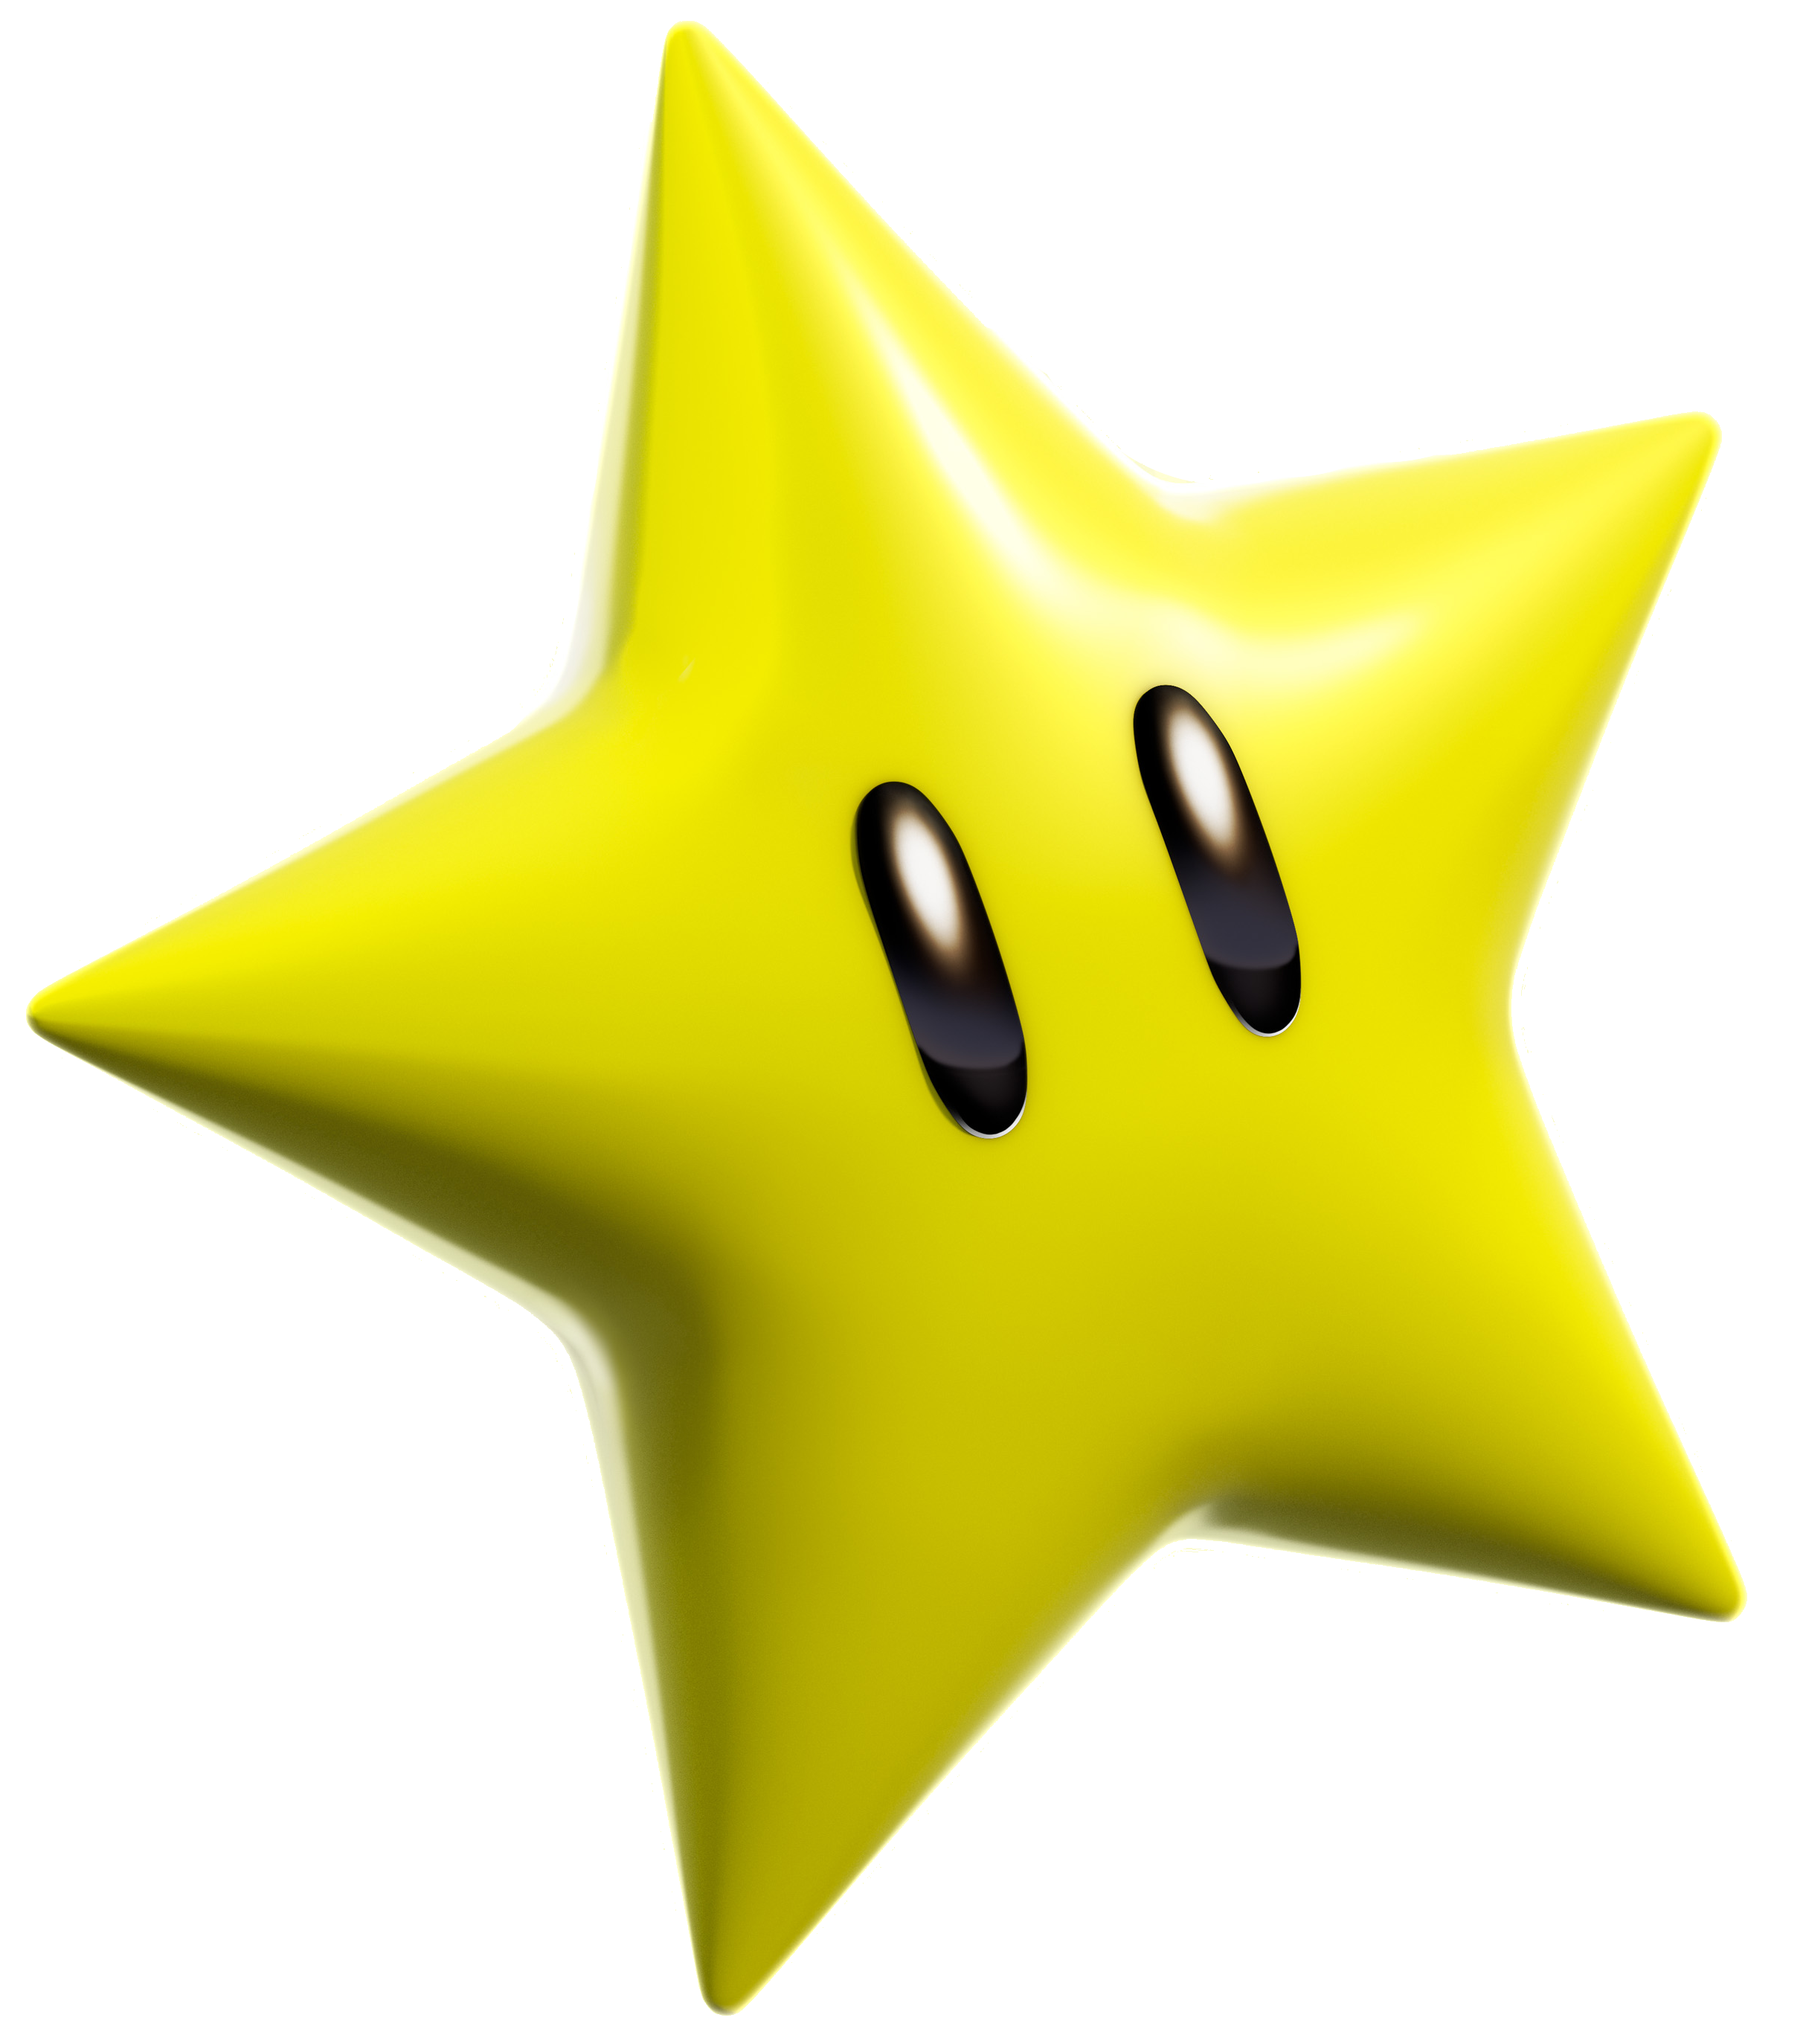 Newer Super Mario All-Stars | Fantendo - Nintendo Fanon Wiki ...